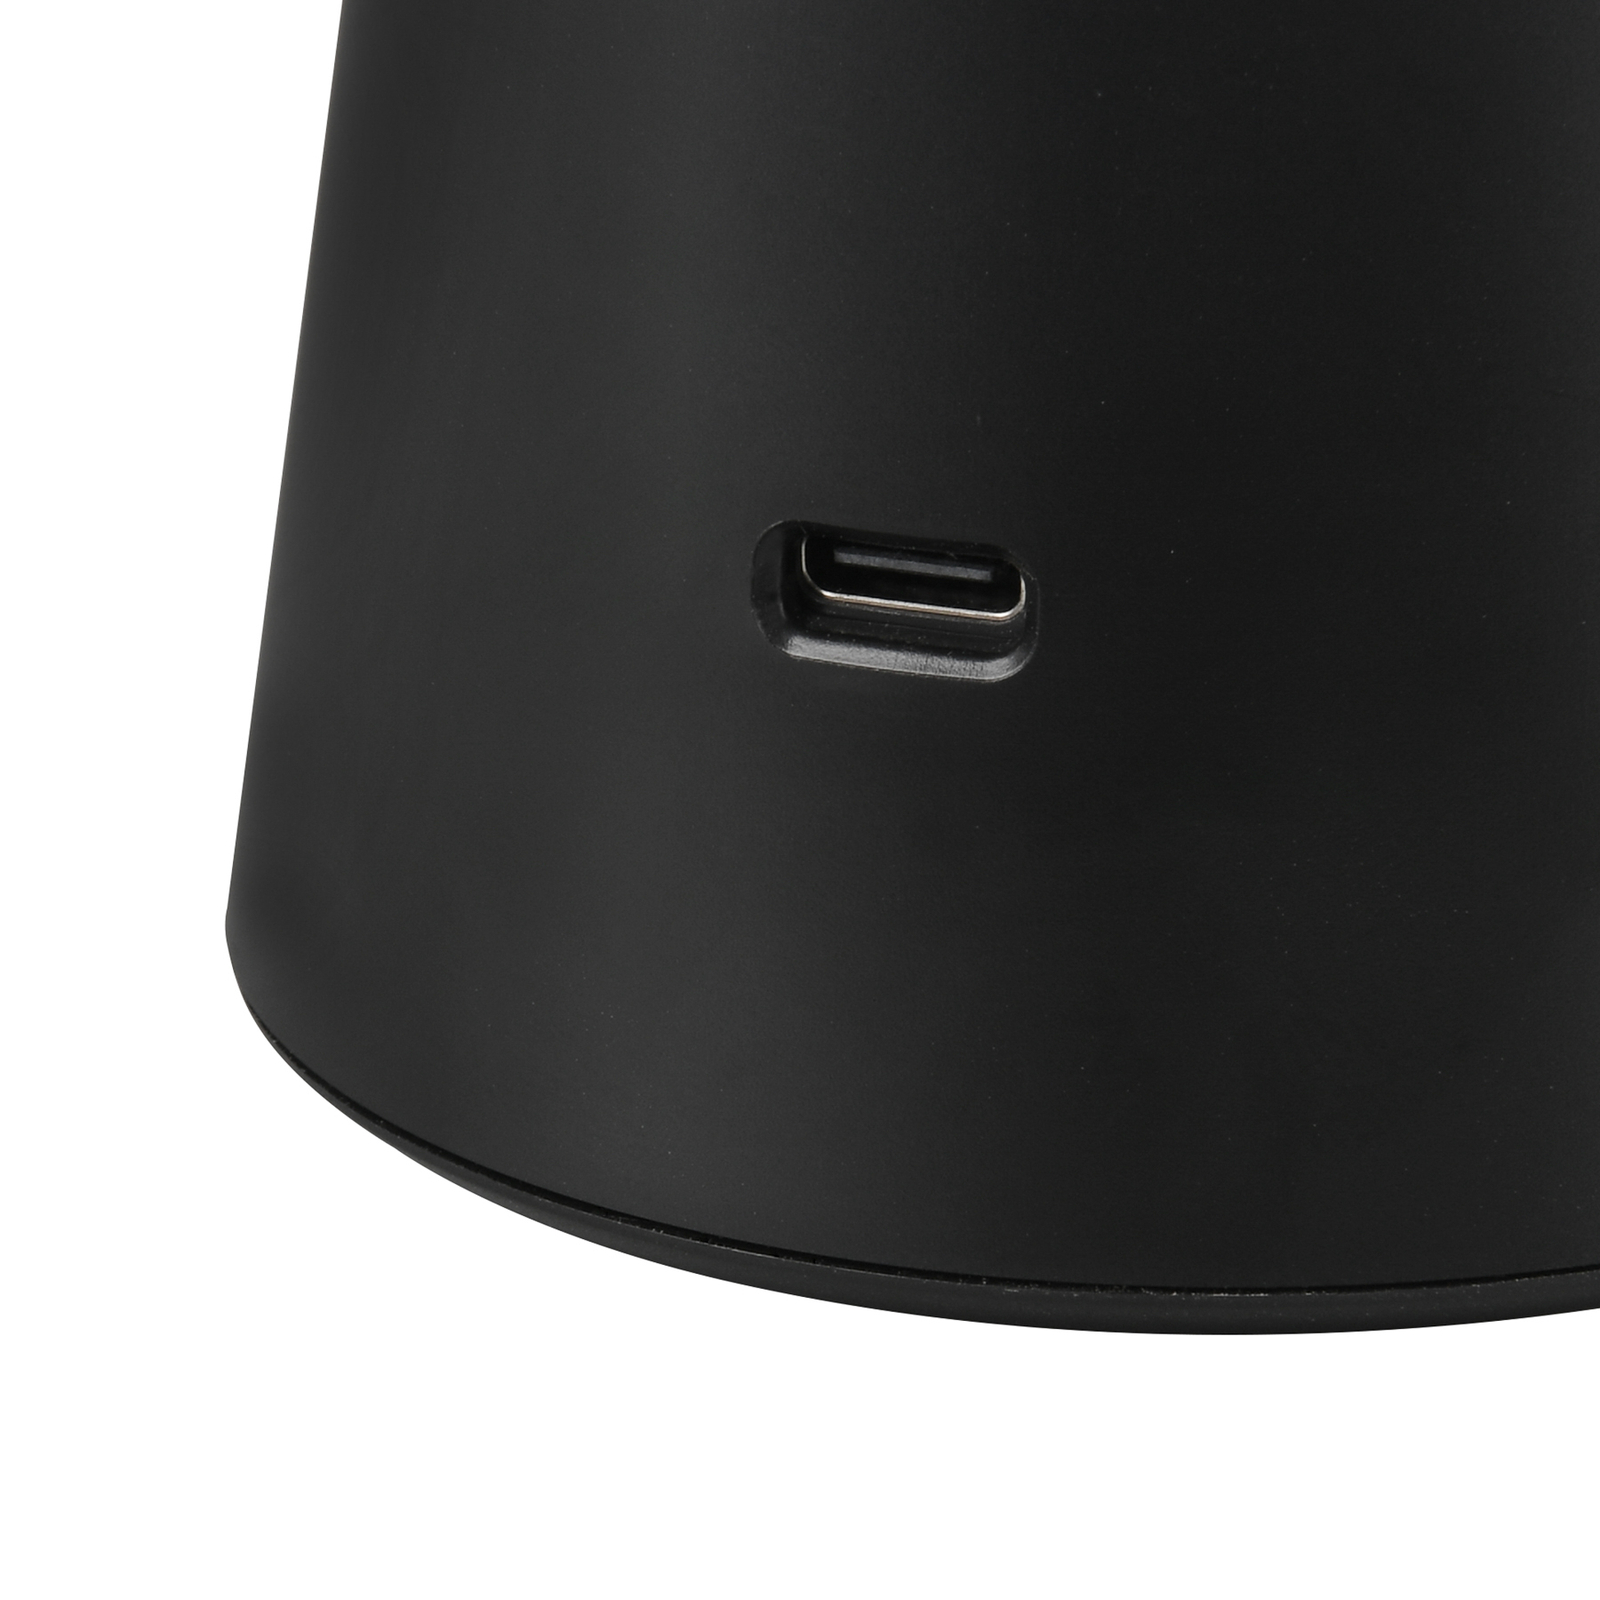 Torrez LED genopladelig bordlampe, sort, højde 28,5 cm, CCT